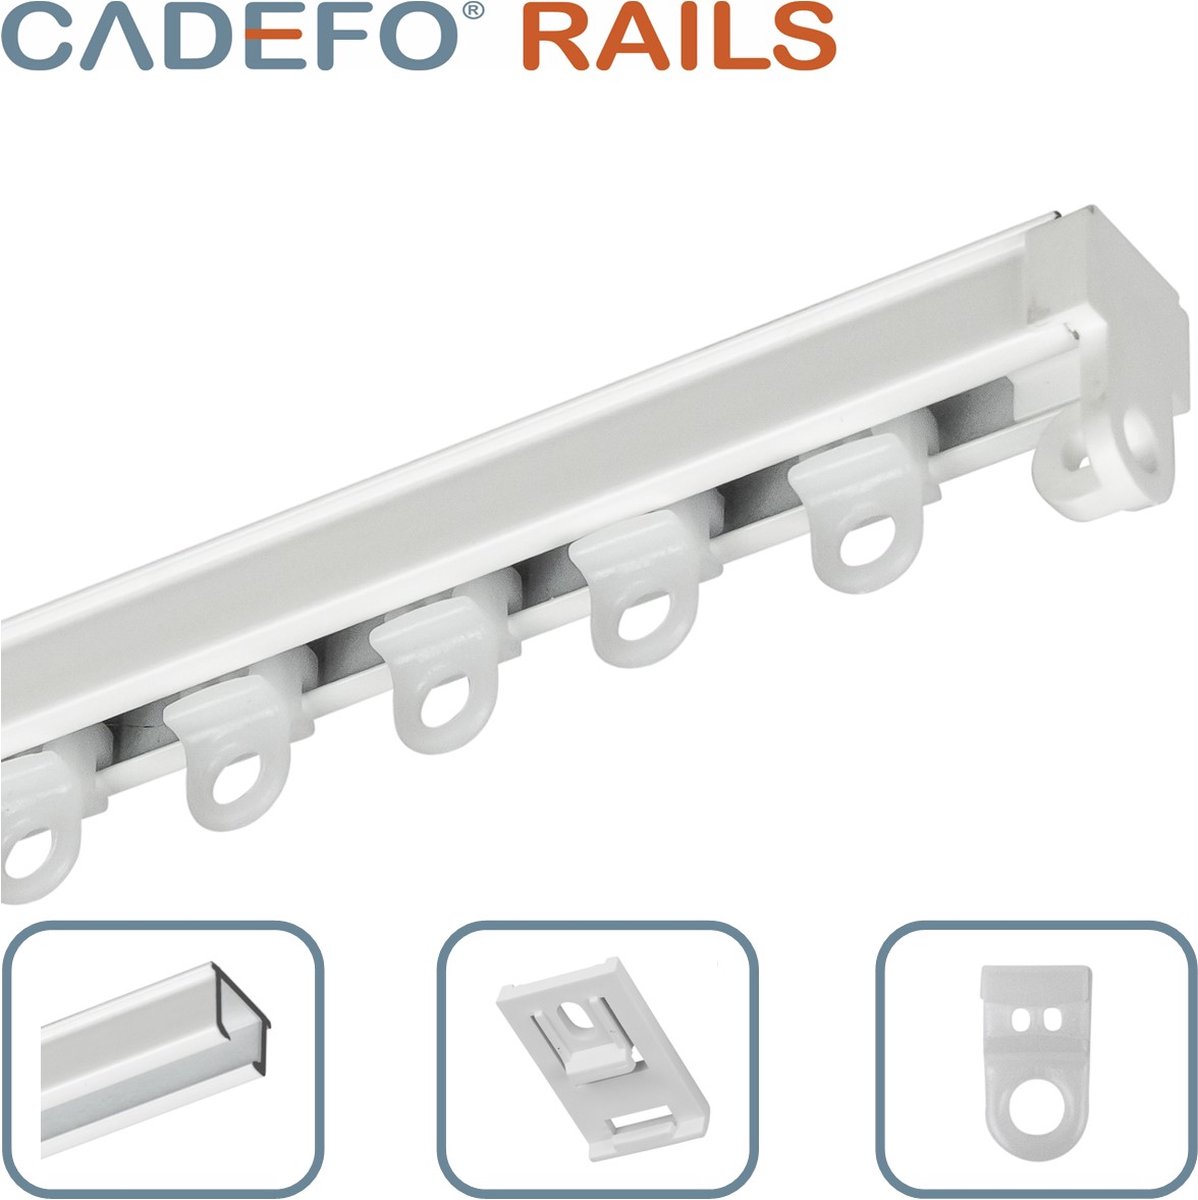 CADEFO RAILS (451 - 500 cm) Gordijnrails - Compleet op maat! - UIT 1 STUK - Leverbaar tot 6 meter - Plafondbevestiging - Lengte 496 cm